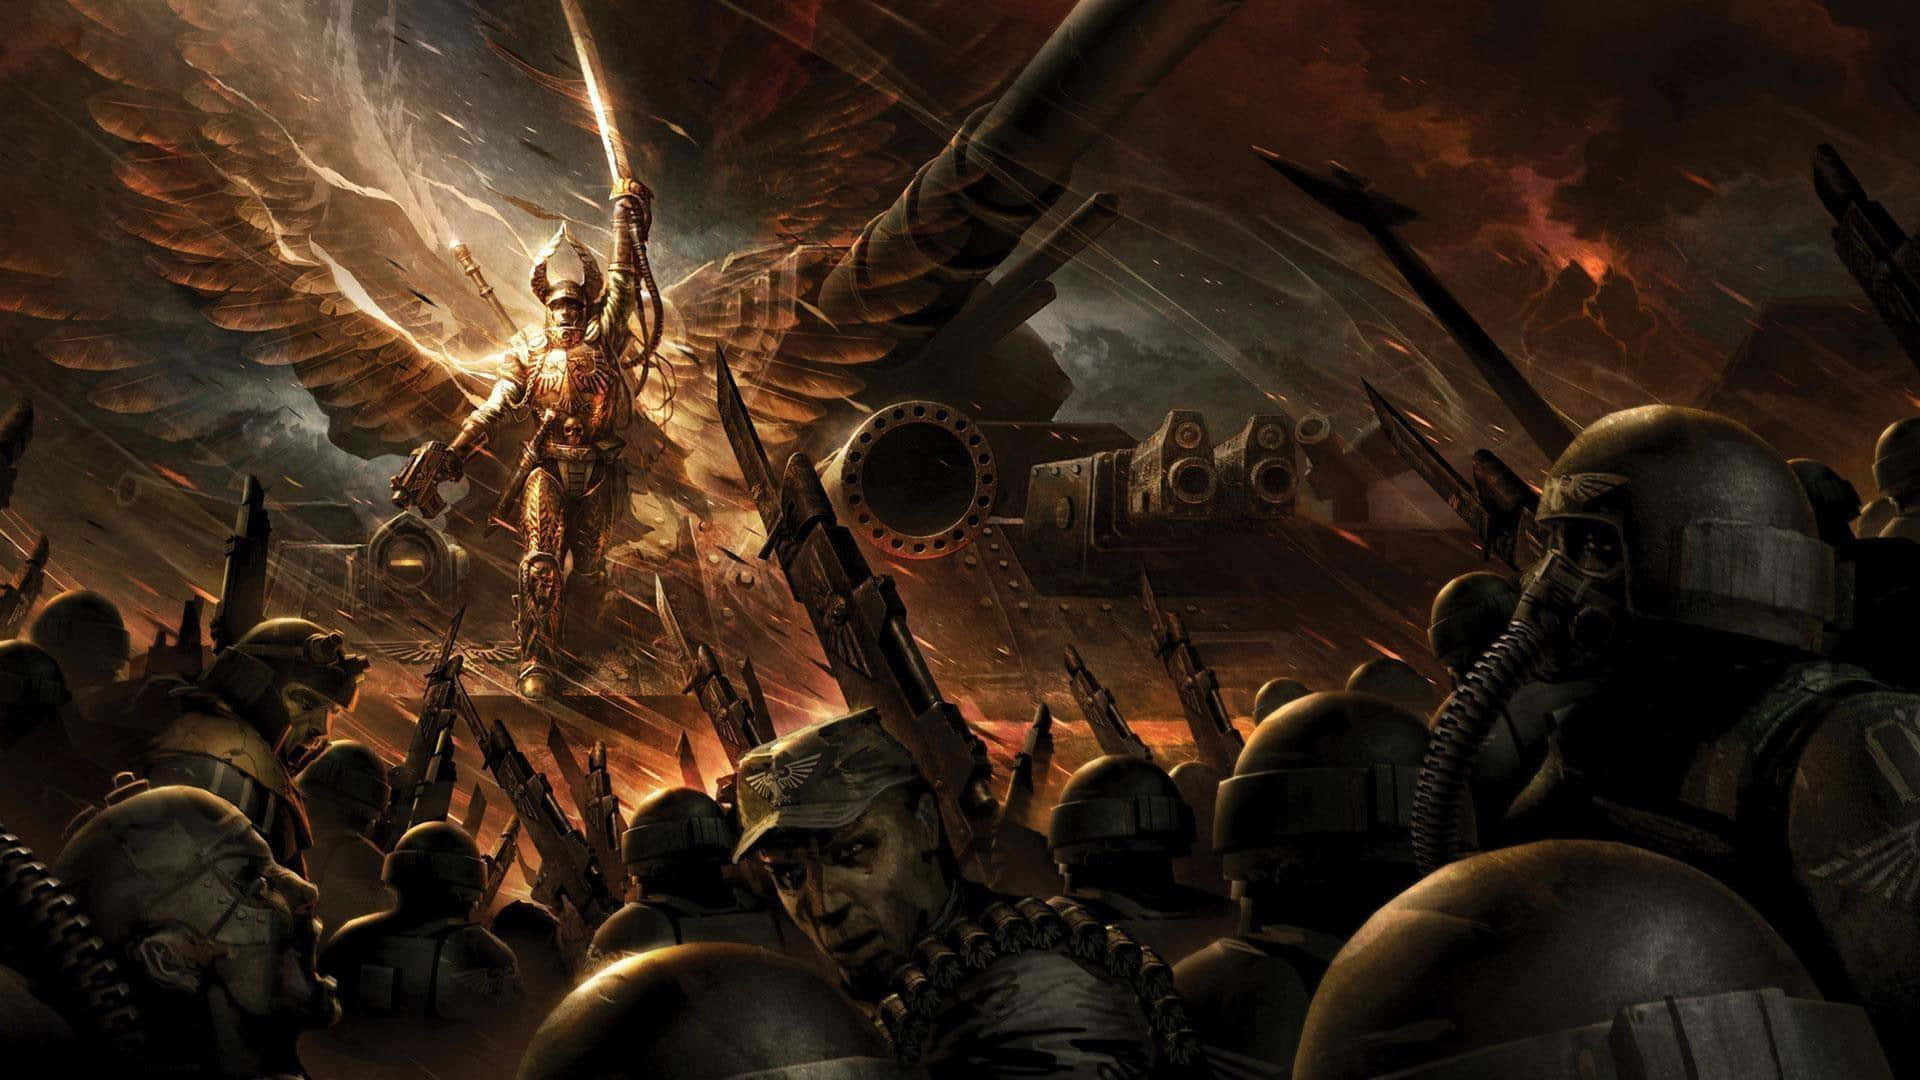 Prægetkonfrontation: To Kræfter Støder Sammen I En Warhammer 4k-kamp. Wallpaper